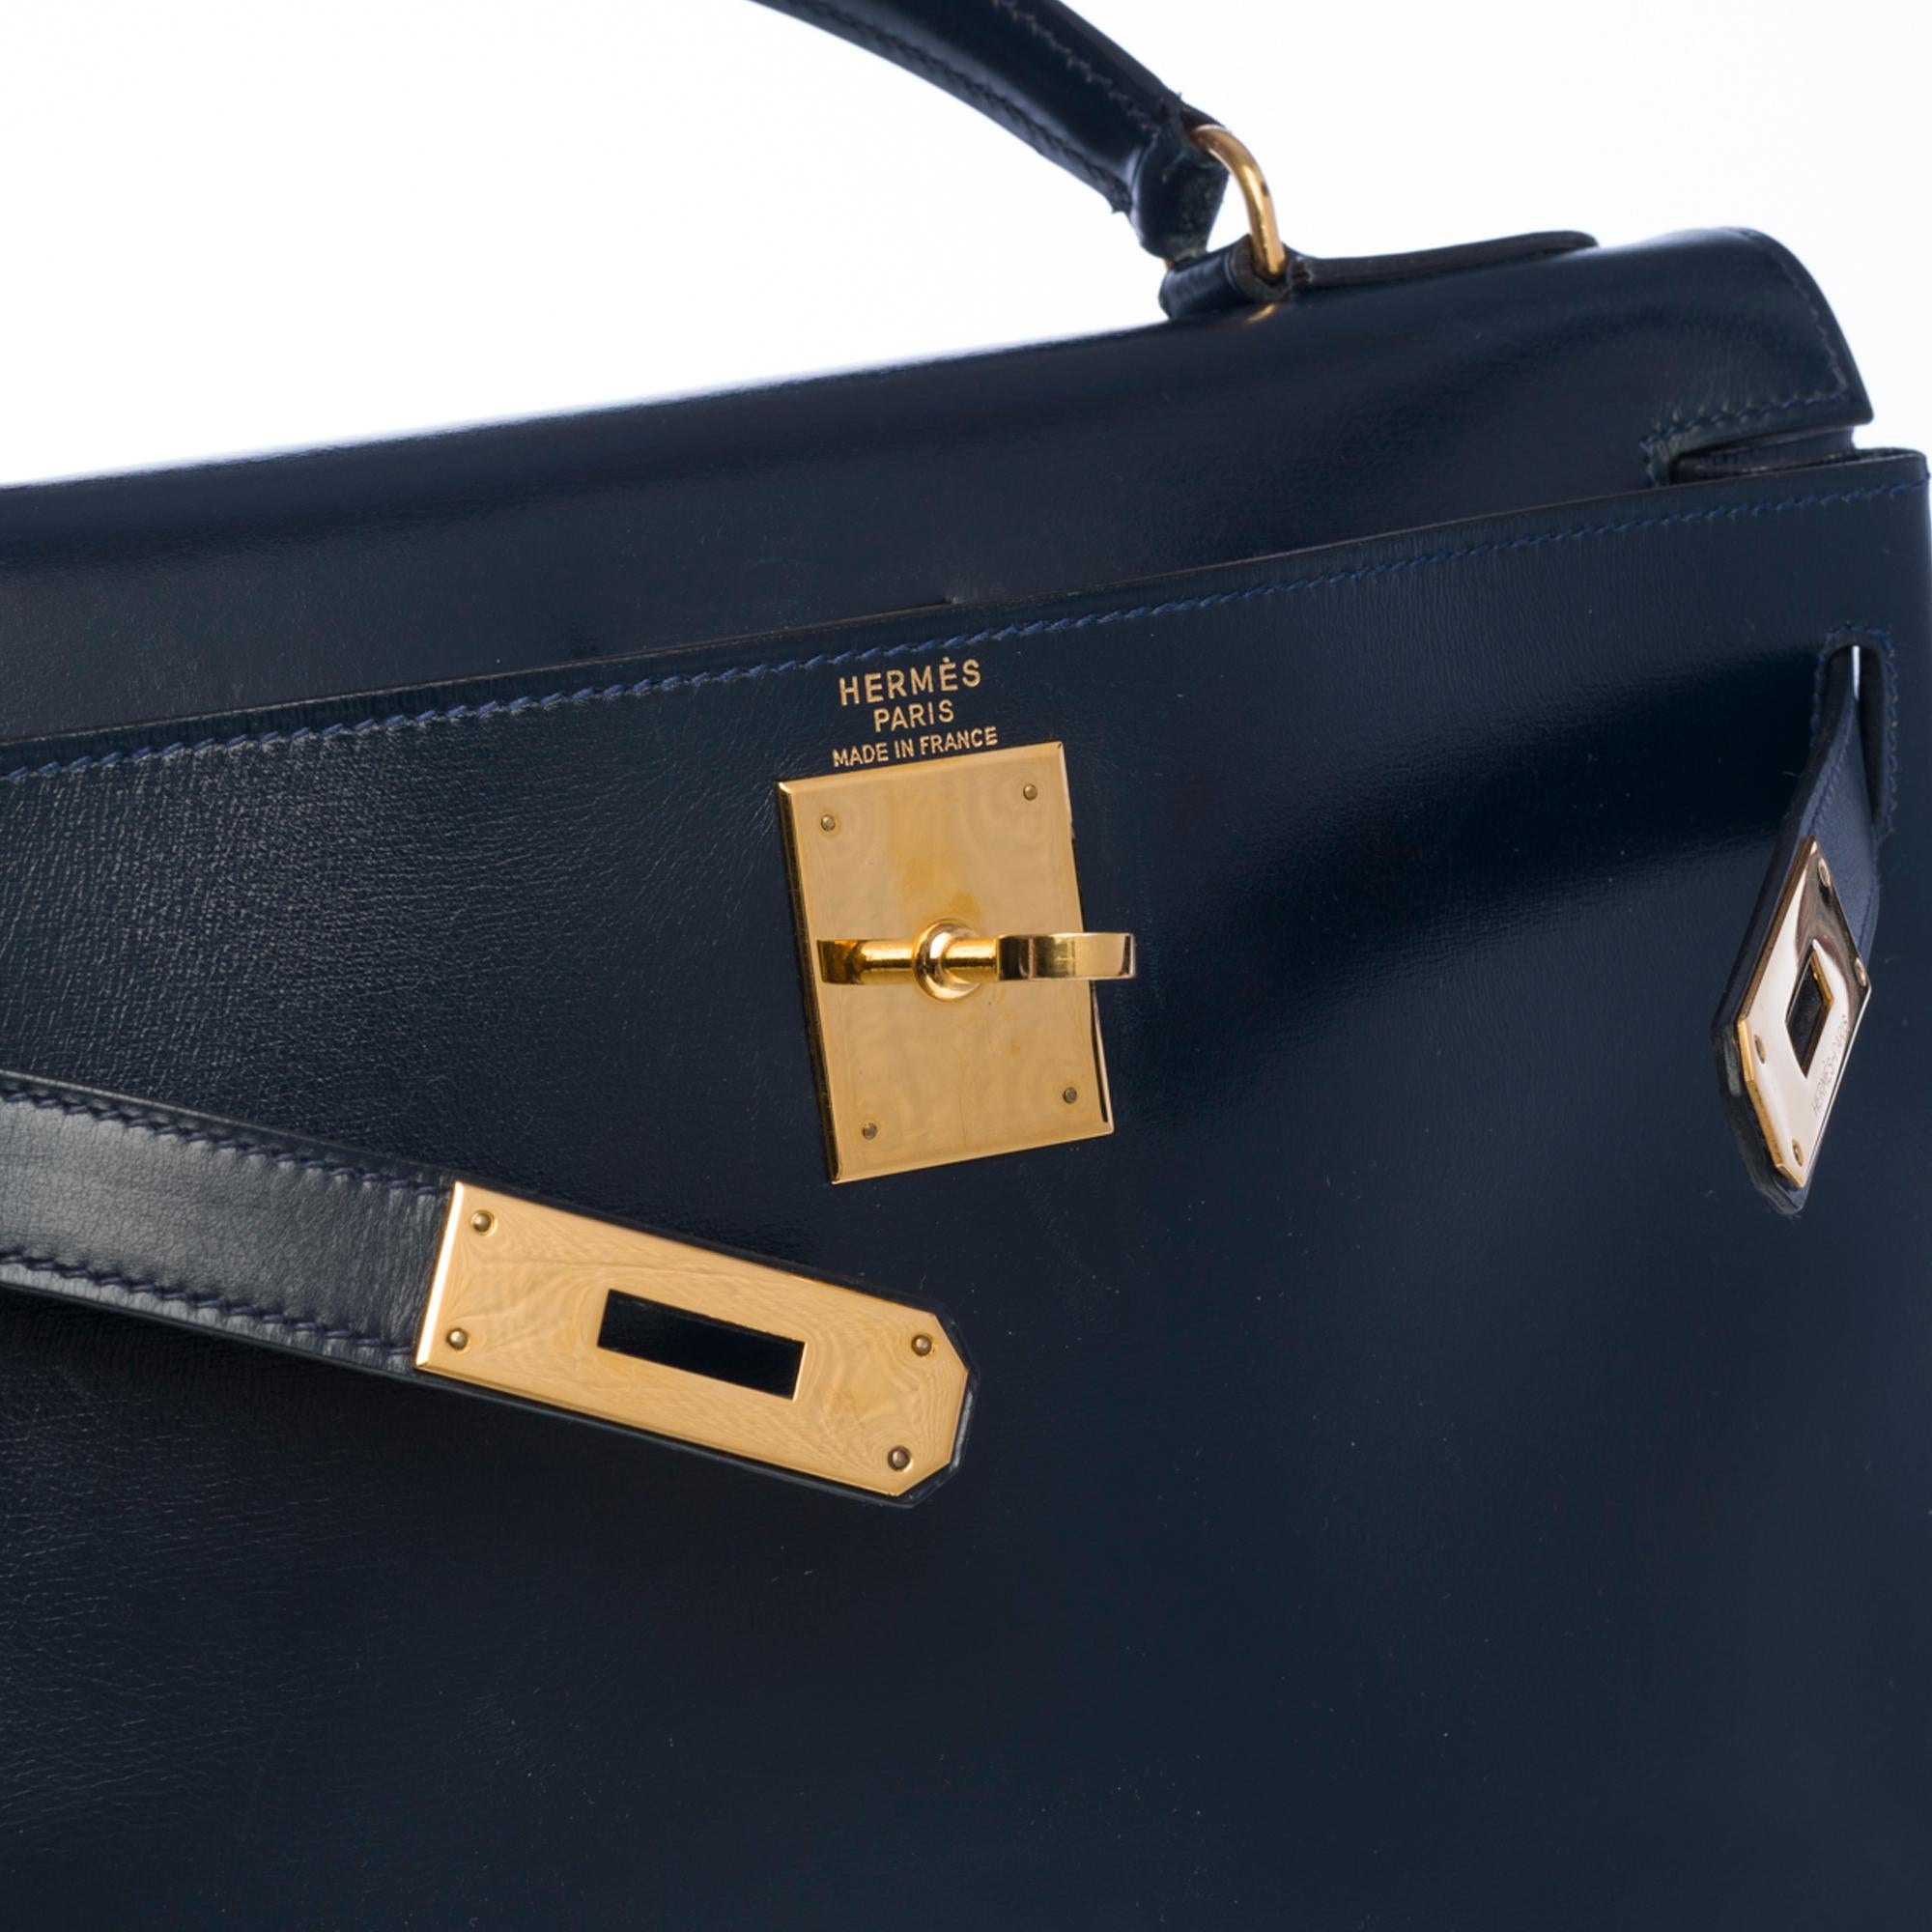 Black Rare Hermes Kelly 28 retourne handbag double strap in Navy blue box calfskin, GHW